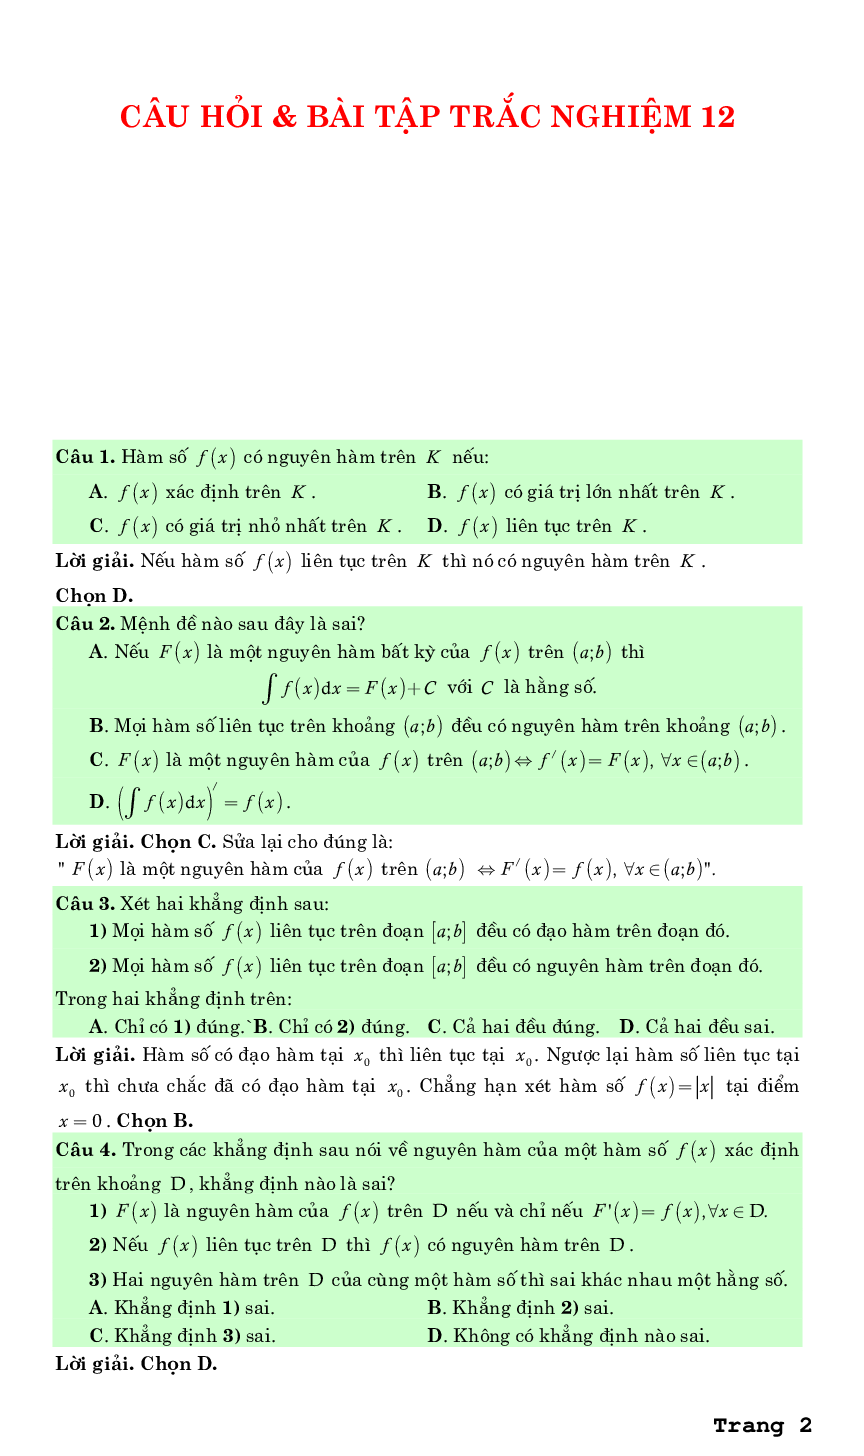 Bài tập trắc nghiệm nguyên hàm tích phân và ứng dụng - Huỳnh Đức Khánh (trang 2)